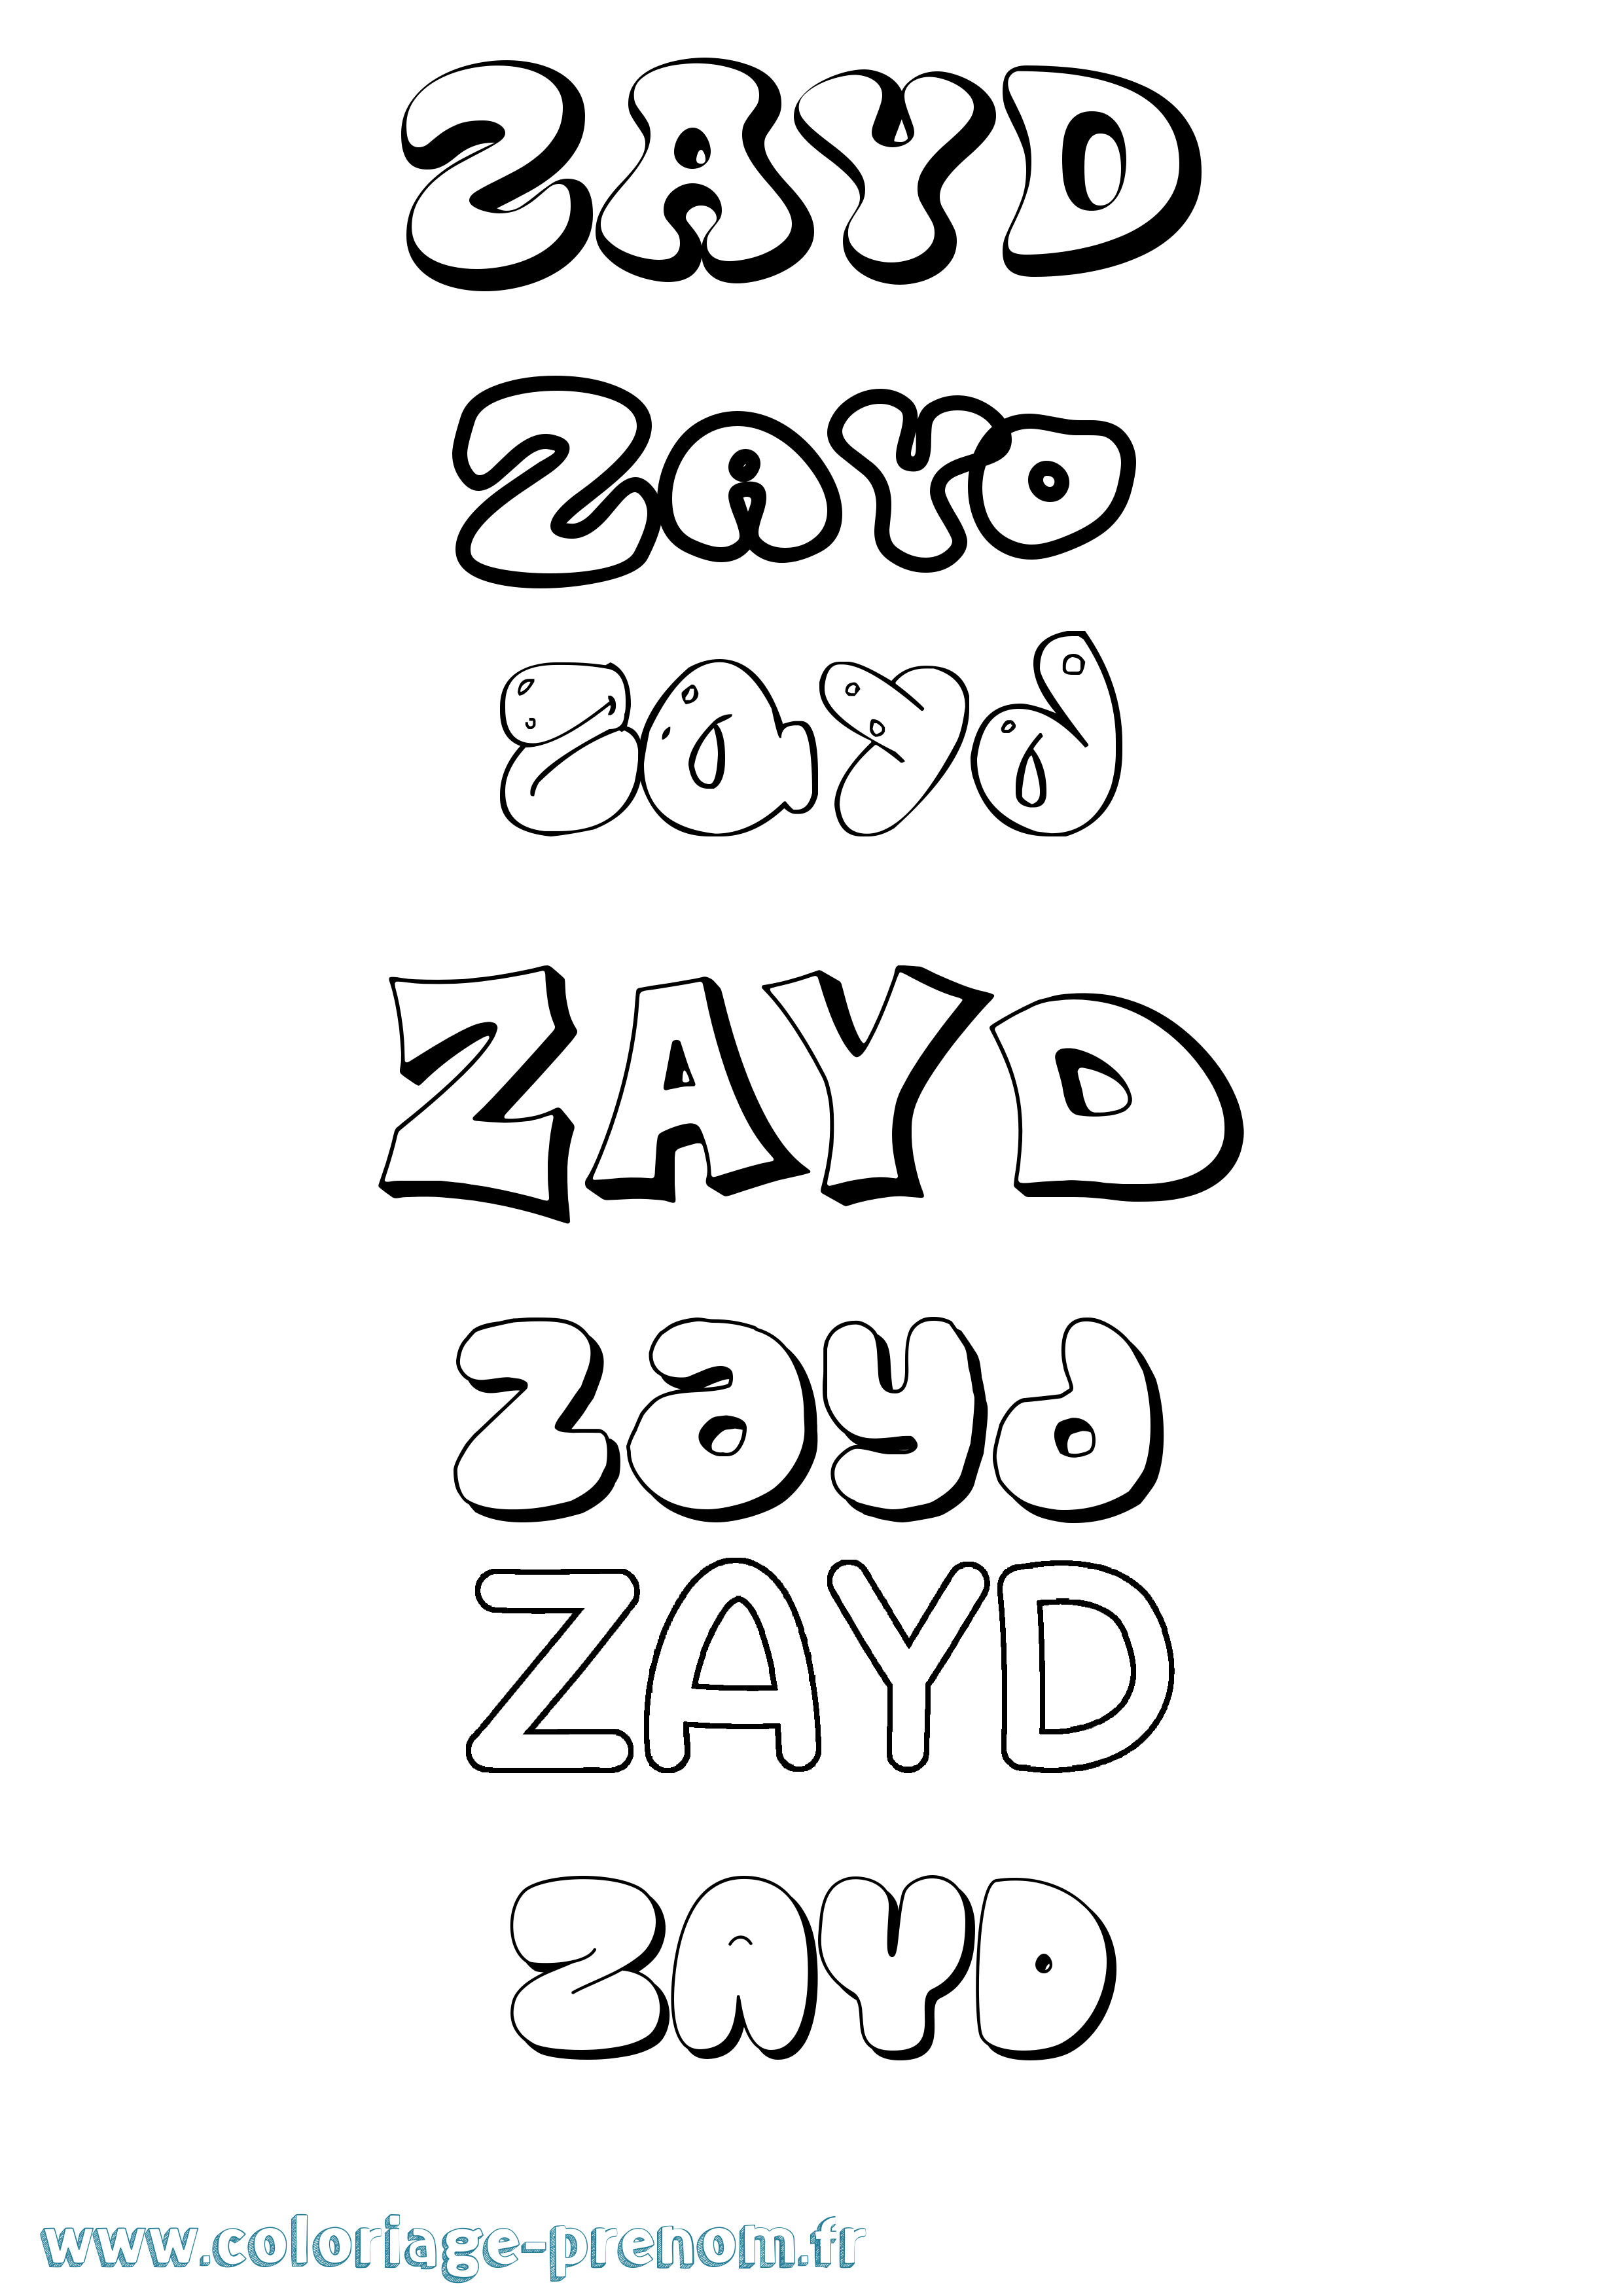 Coloriage prénom Zayd